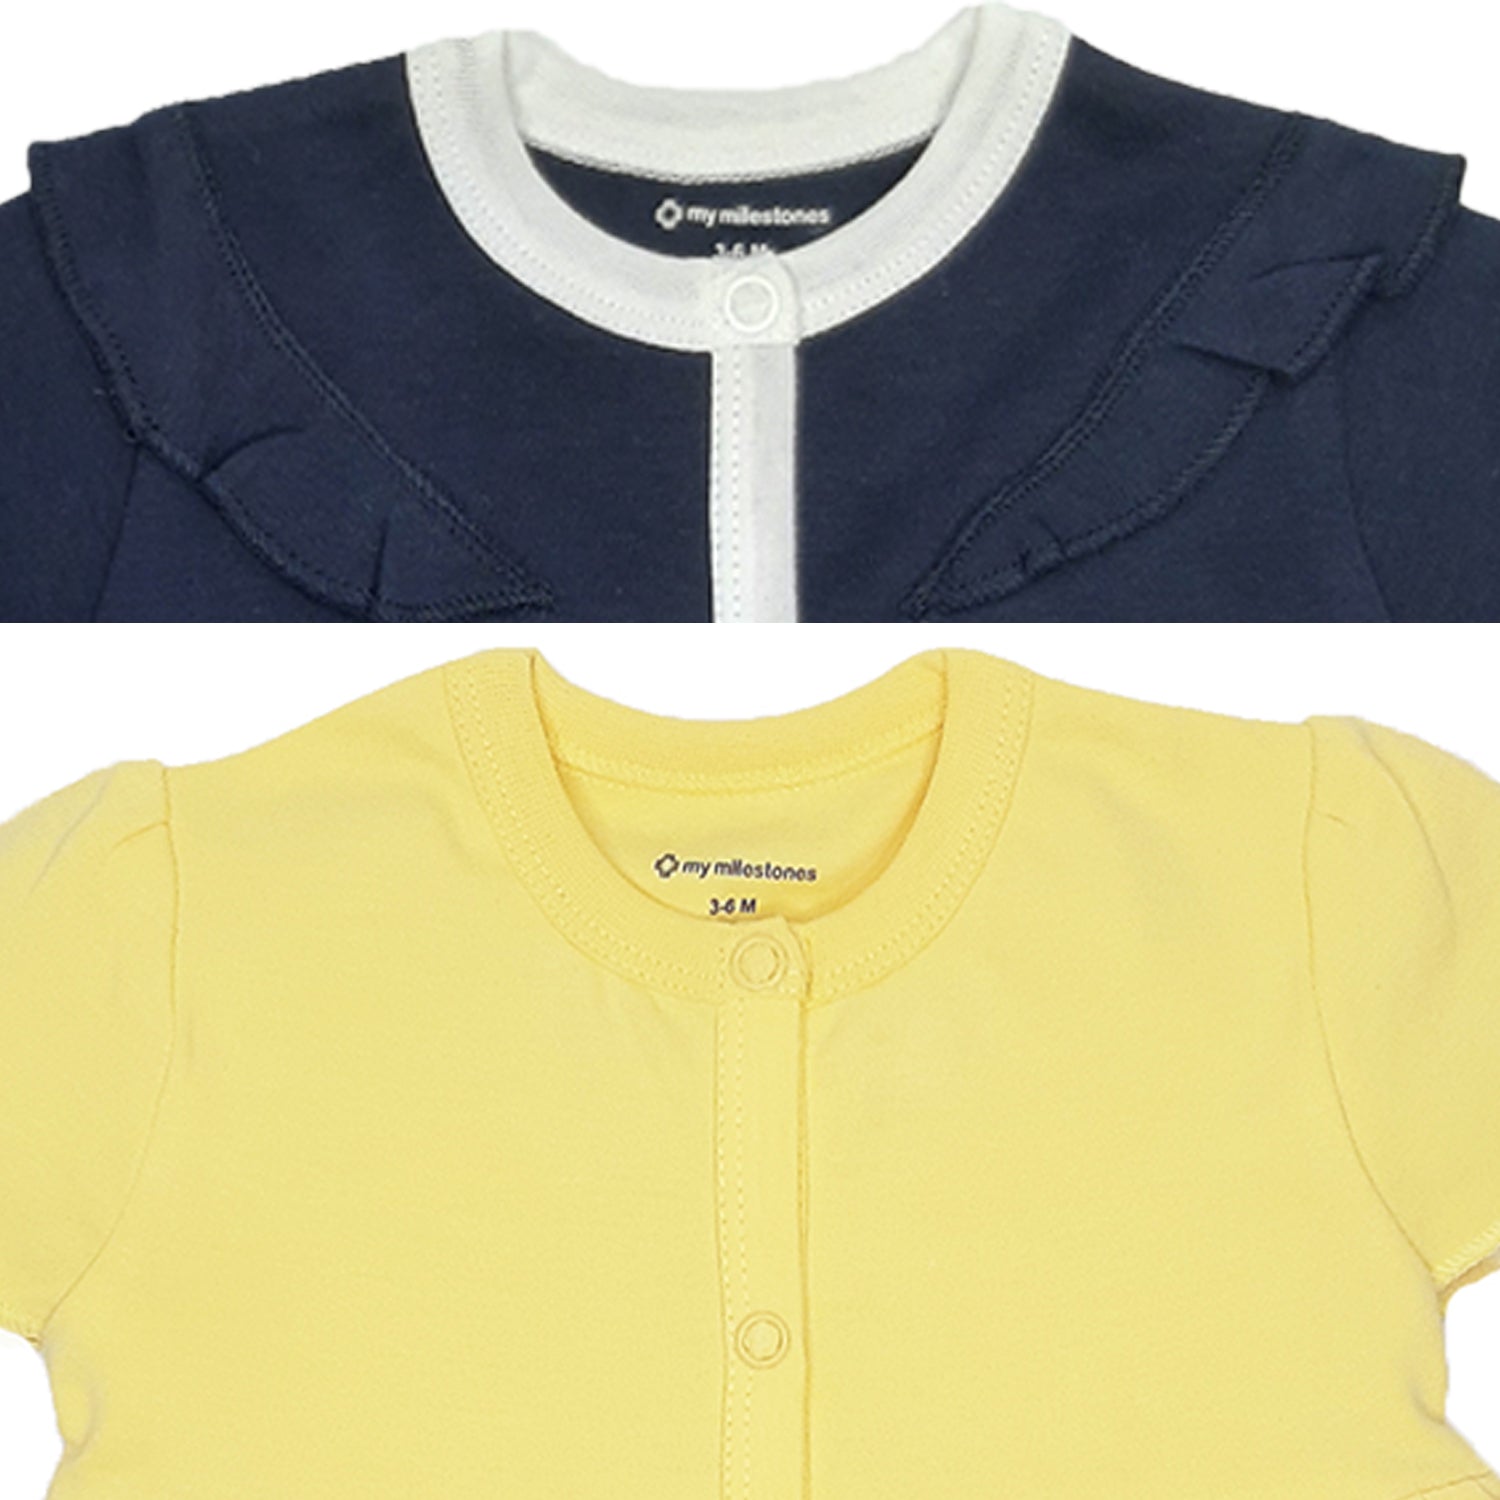 My Milestones T-shirt Half Sleeves Girls Yellow/ Navy Blue - 2 PC Pack